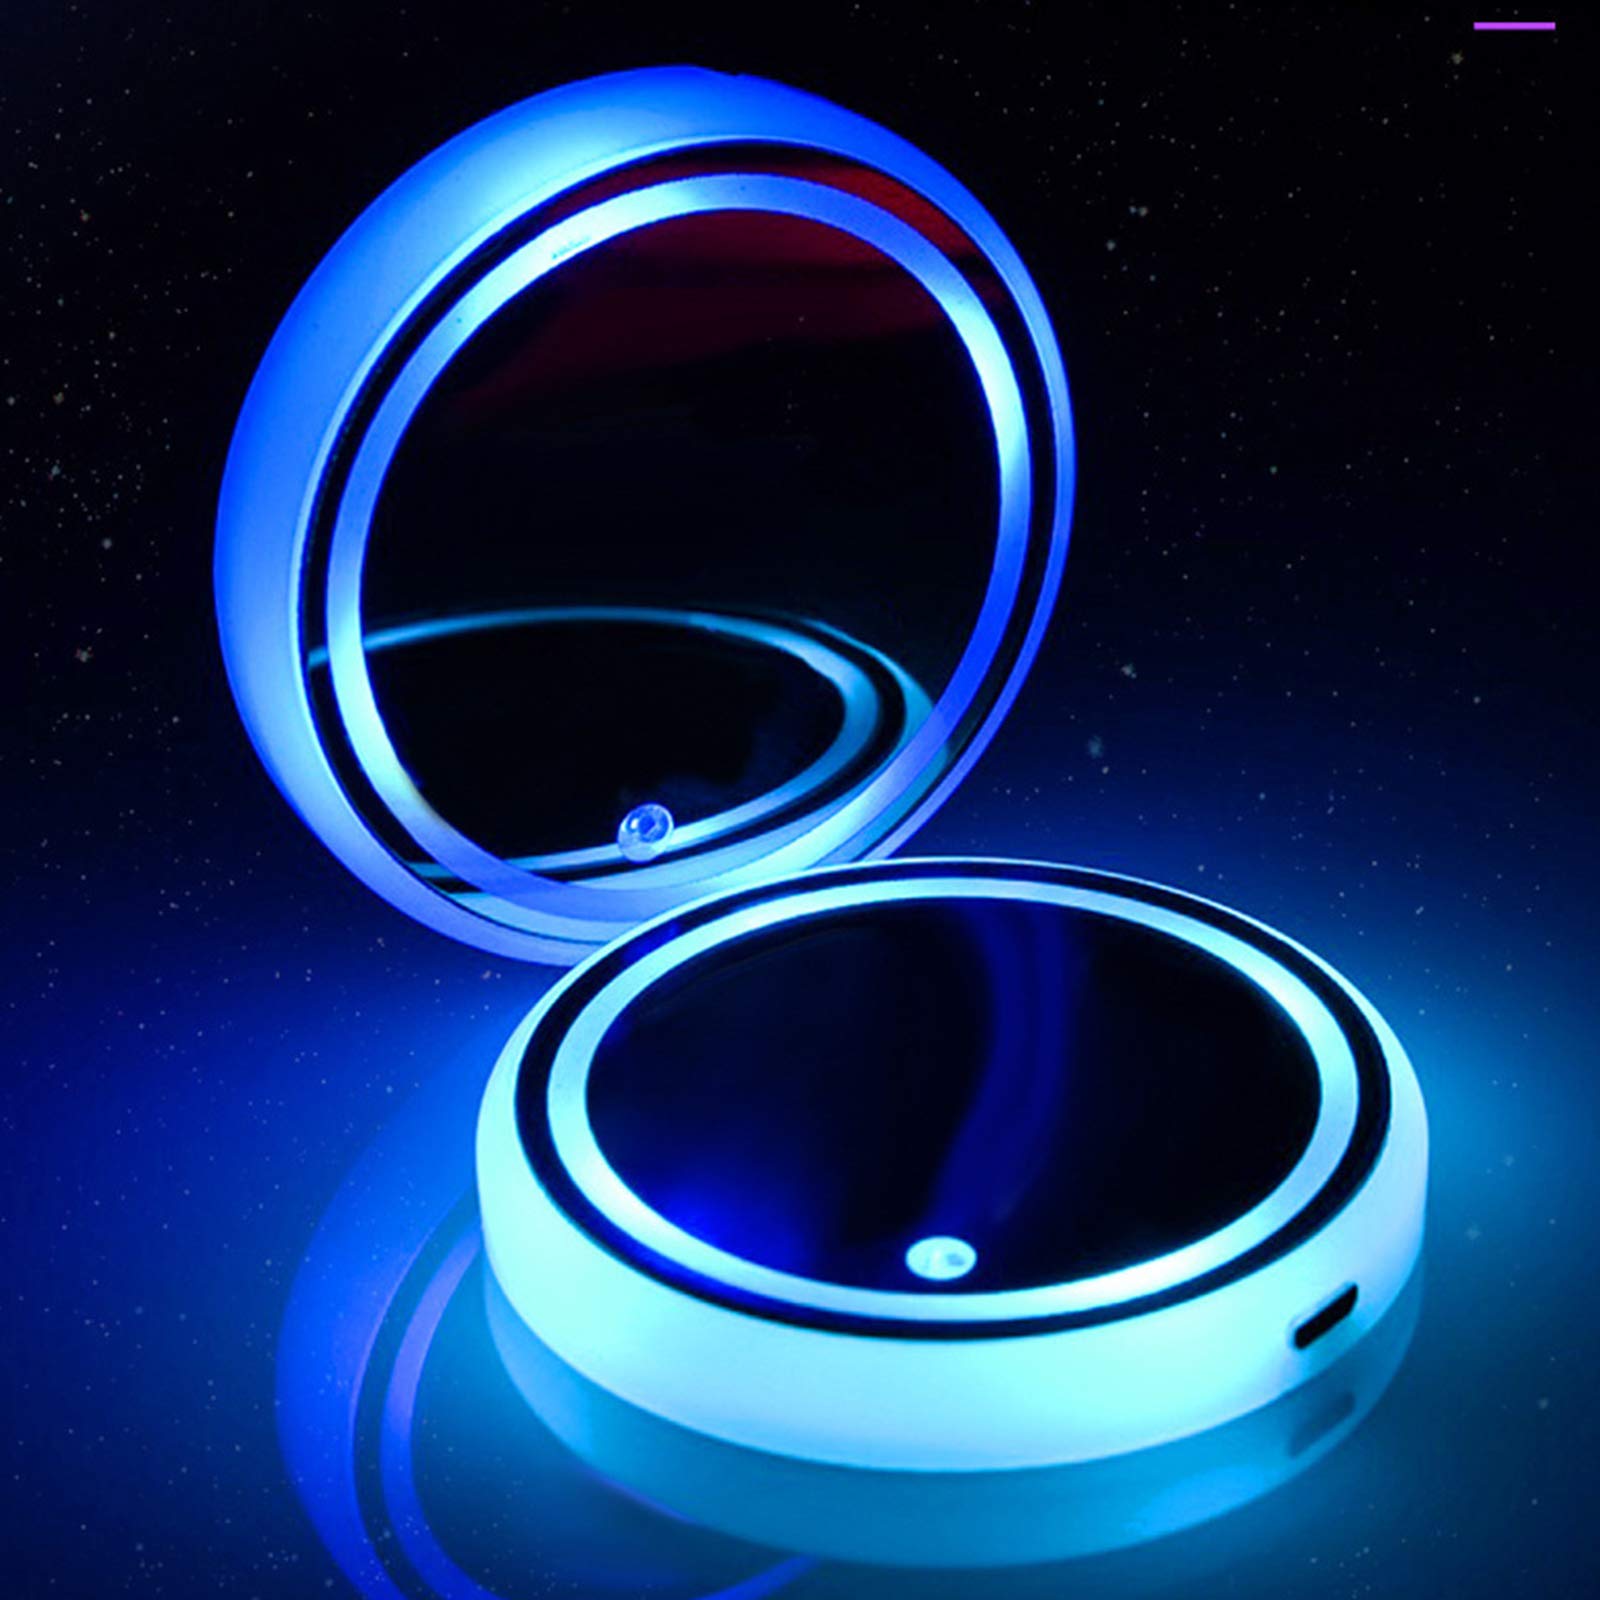 LED Getränkehalterleuchten,1pcs Auto LED-Untersetze mit 7 Farben Luminescent Light,Wasserdichtes Lumineszenz USB-Ladetassenmatte für Getränke,Zubehör,Innendekoration,Atmosphärenlicht von Nicoone